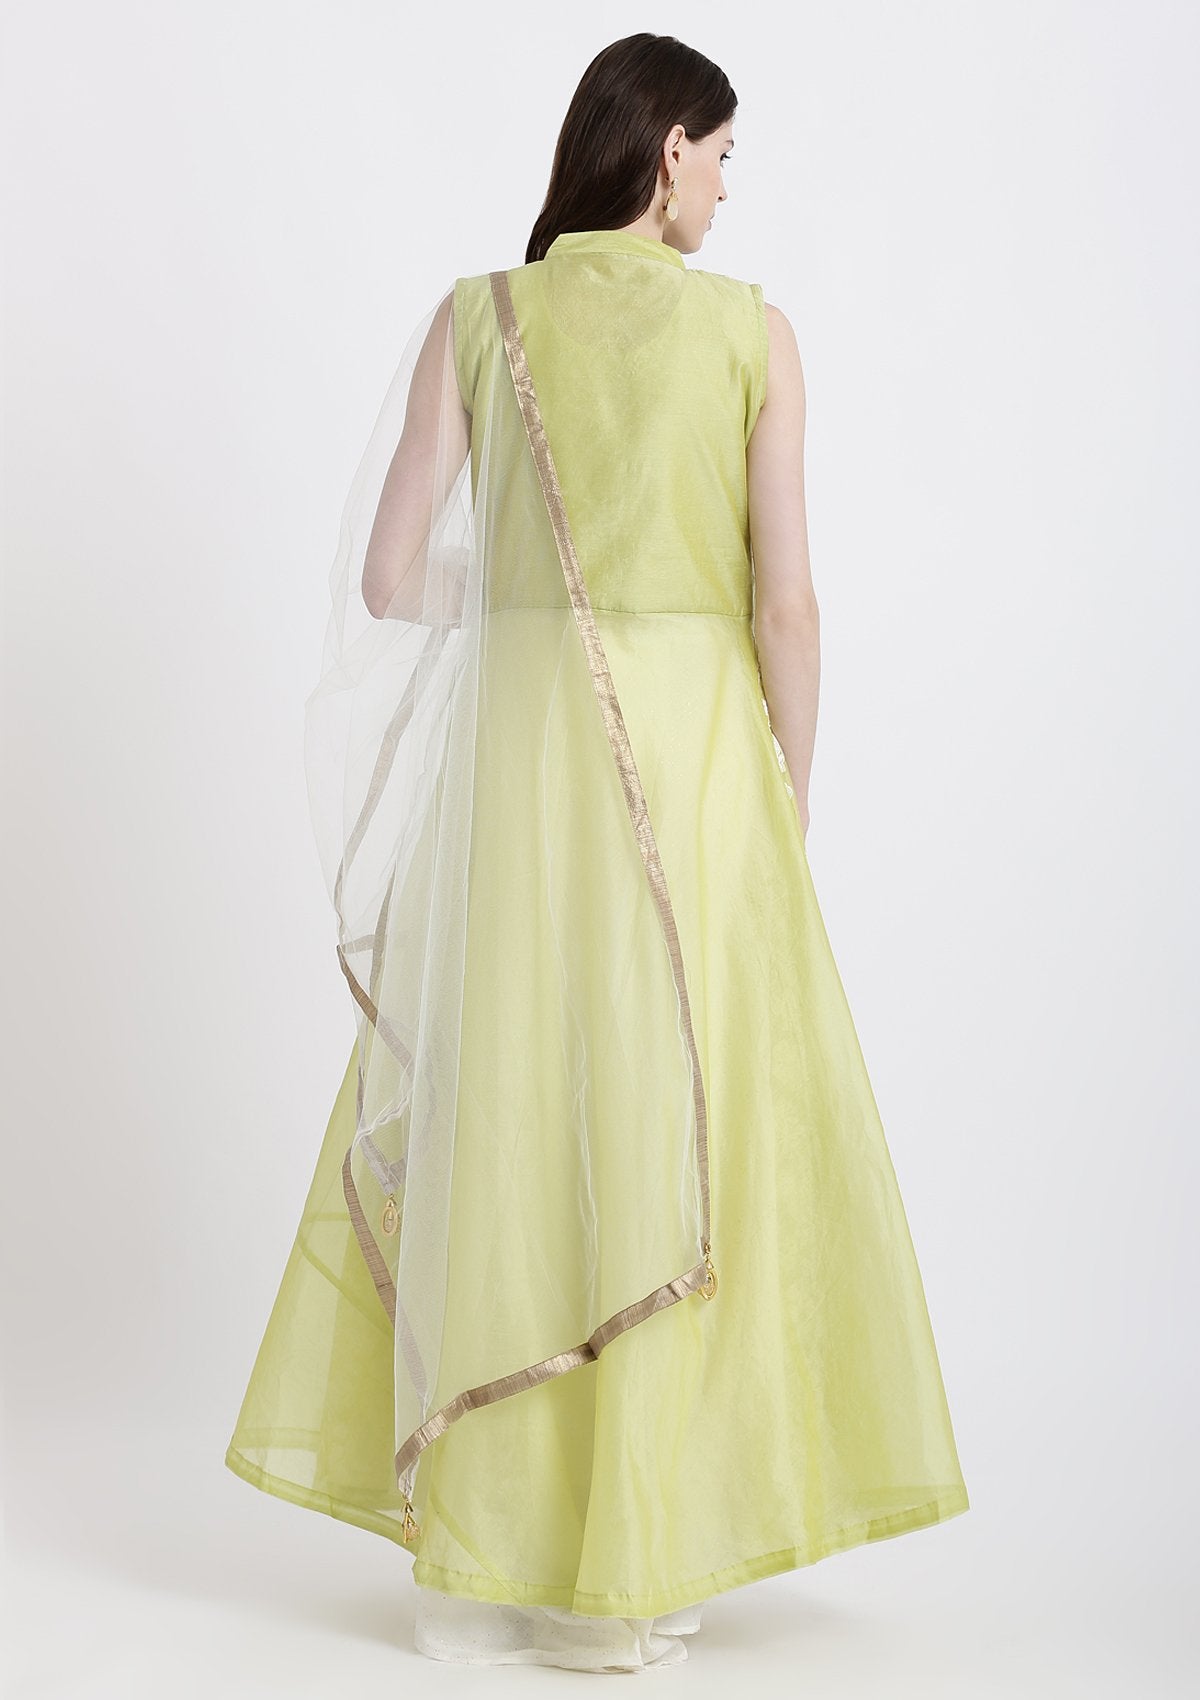 Parrot Green Threadwork Chanderi Designer Gown-Koskii